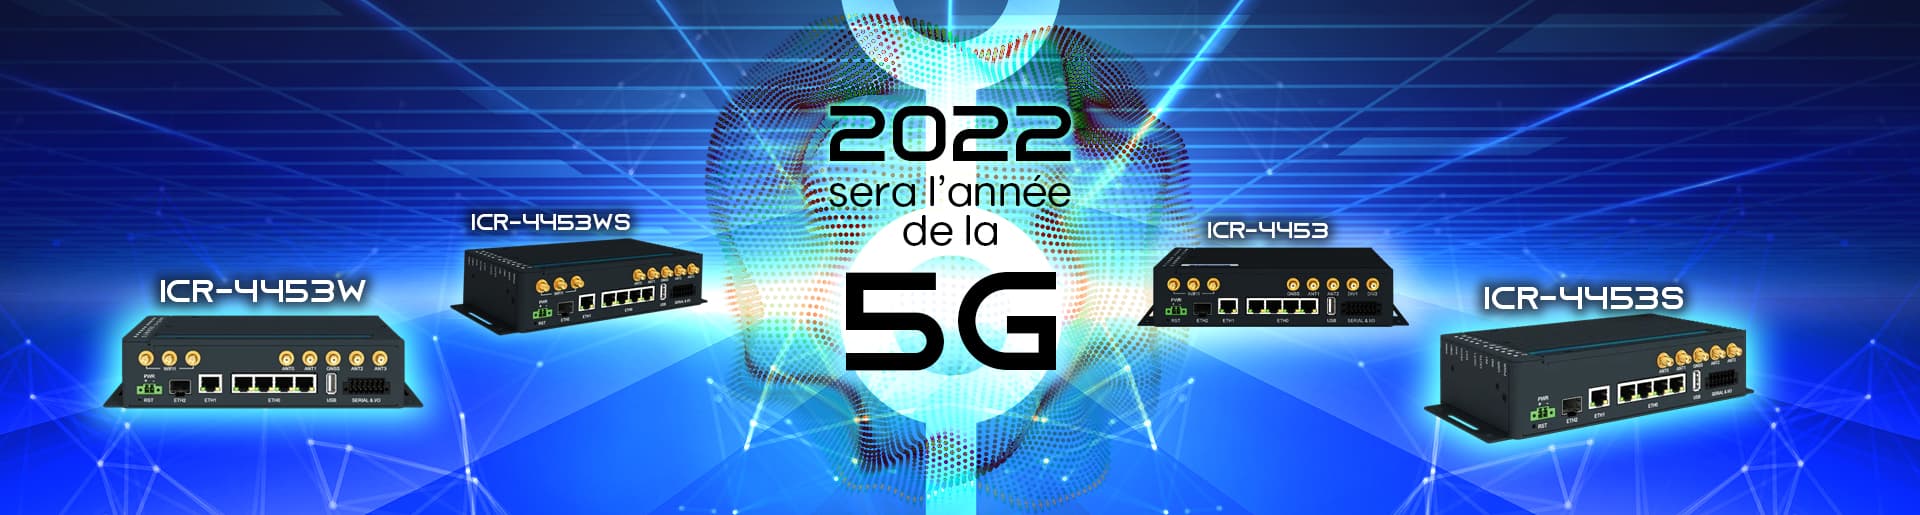 En 2022 la 5G sera à l'honneur, découvrez dès maintenant nos routeurs industriels compatibles !